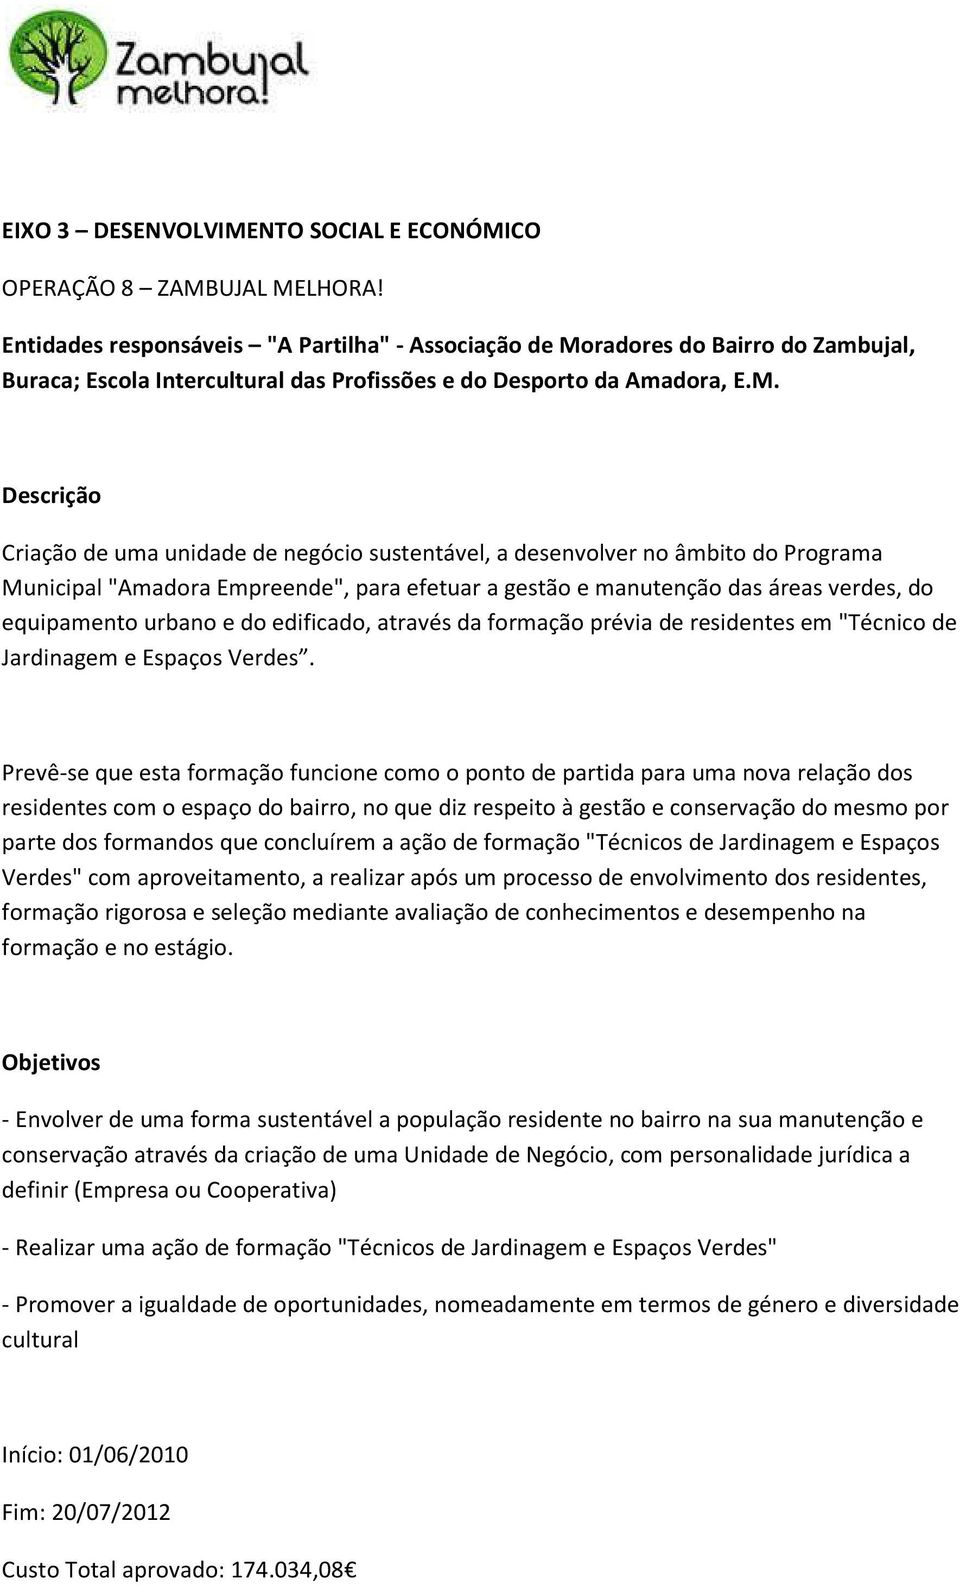 radores do Bairro do Zambujal, Buraca; Escola Intercultural das Profissões e do Desporto da Amadora, E.M.